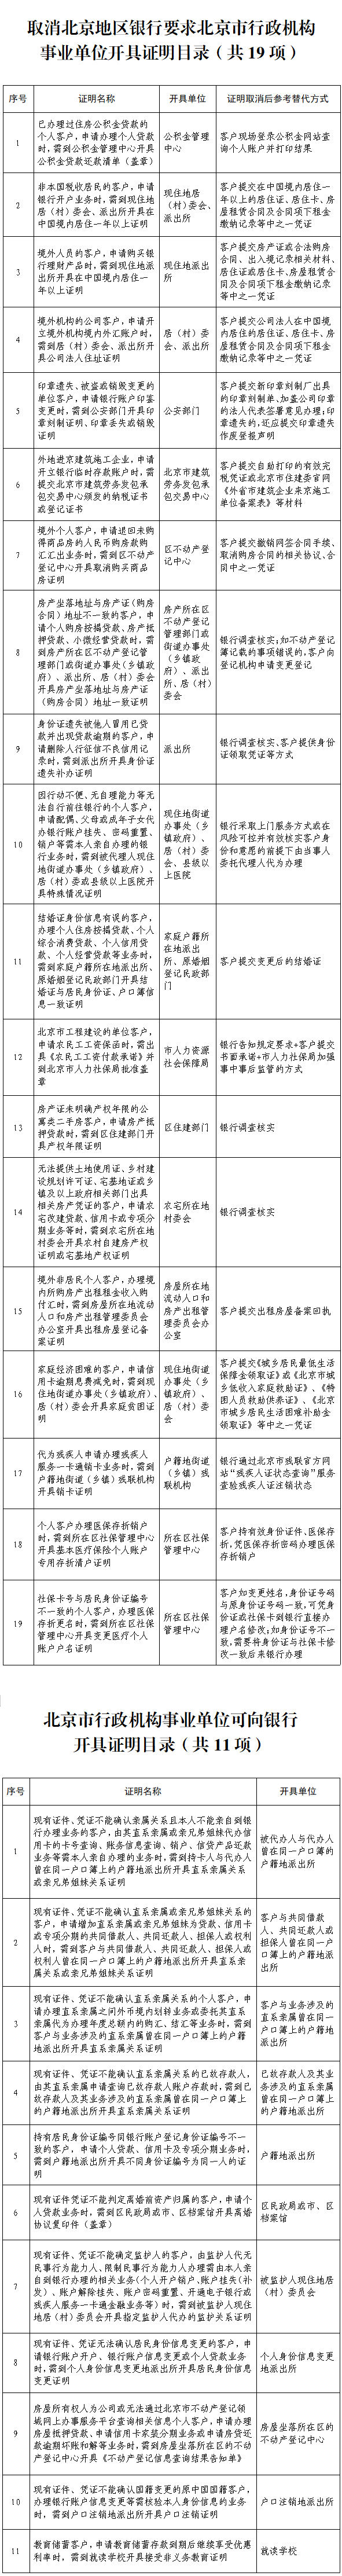 取消北京地区银行要求北京市行政机构事业单位开具证明目录